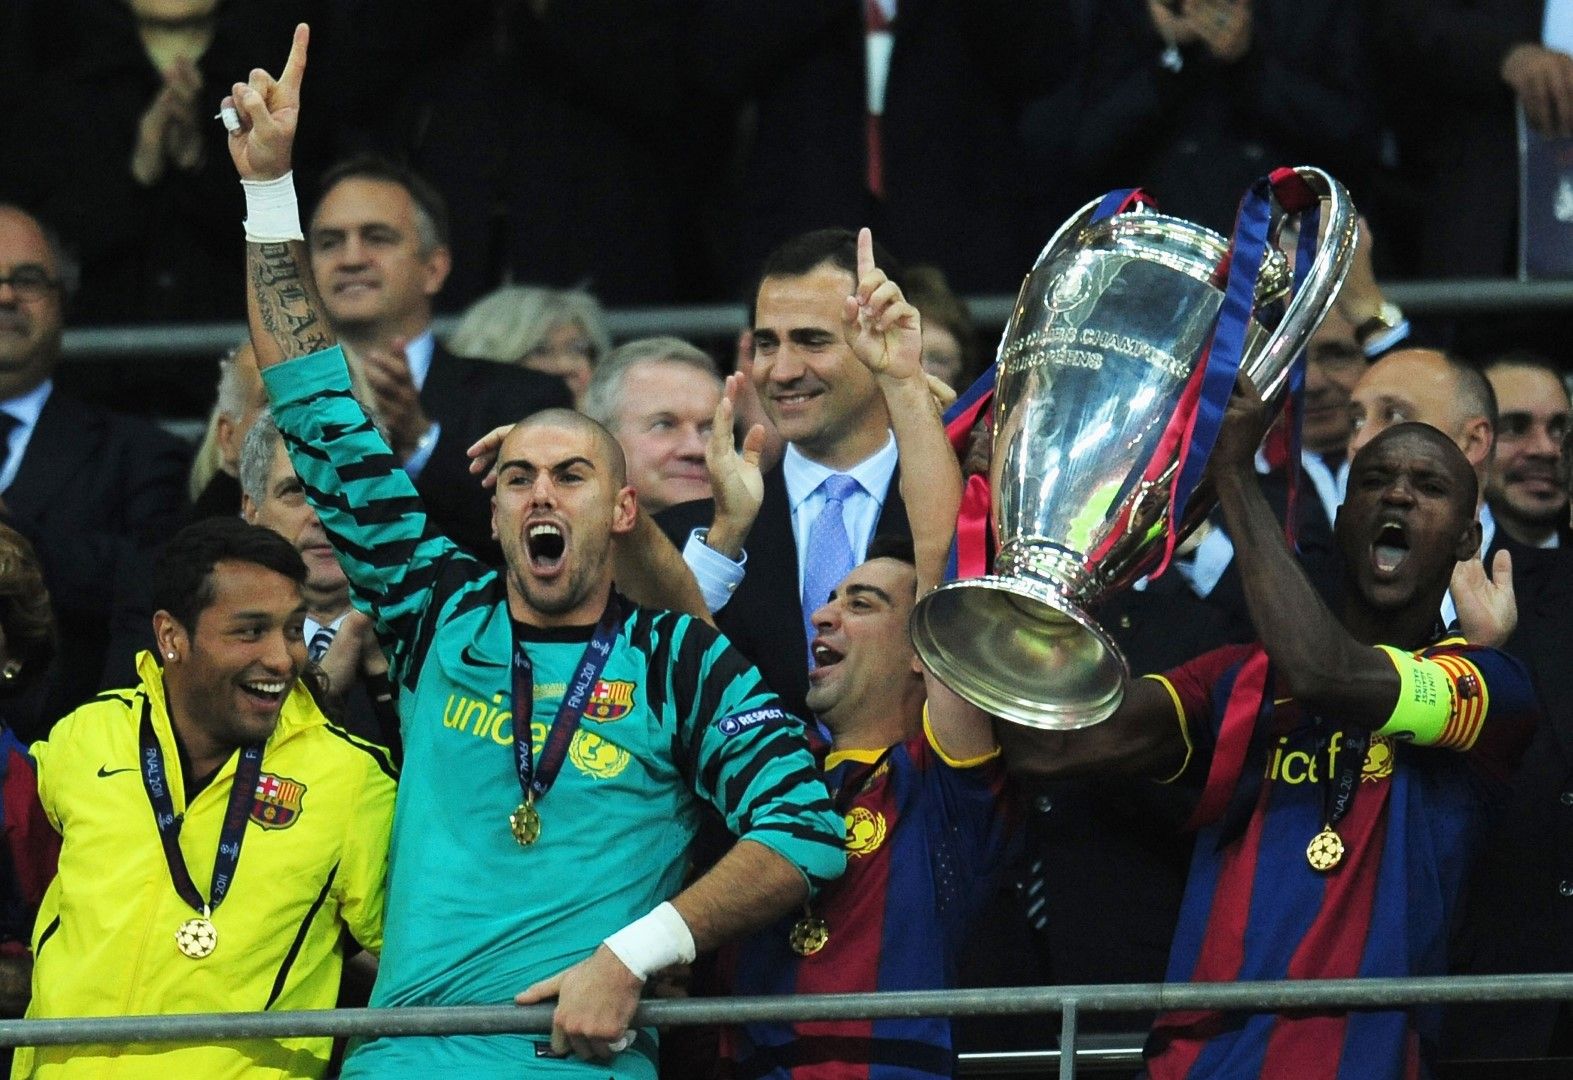 2011 г., Финал в Шампионската лига. След 3:1 купата е в ръцете на Ерик Абидал и Барселона. И на "Уембли" за Бербатов остана разочарование, дори не бе в групата